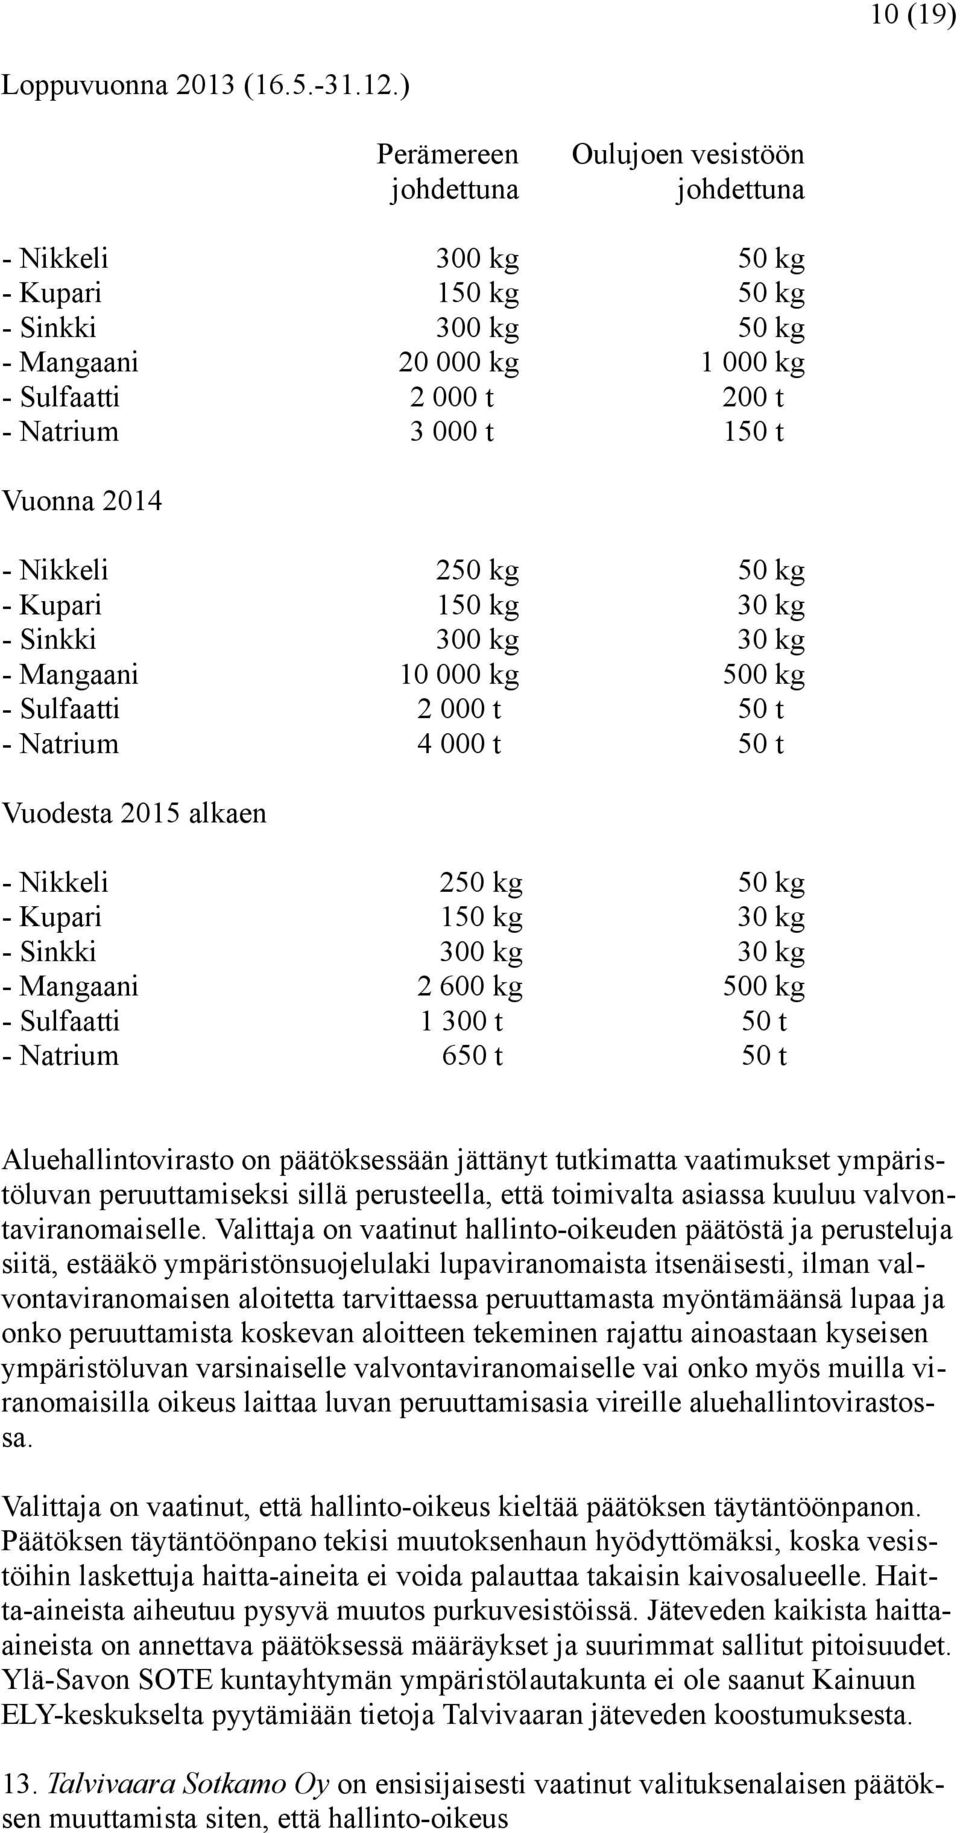 t Vuonna 2014 - Nikkeli 250 kg 50 kg - Kupari 150 kg 30 kg - Sinkki 300 kg 30 kg - Mangaani 10 000 kg 500 kg - Sulfaatti 2 000 t 50 t - Natrium 4 000 t 50 t Vuodesta 2015 alkaen - Nikkeli 250 kg 50